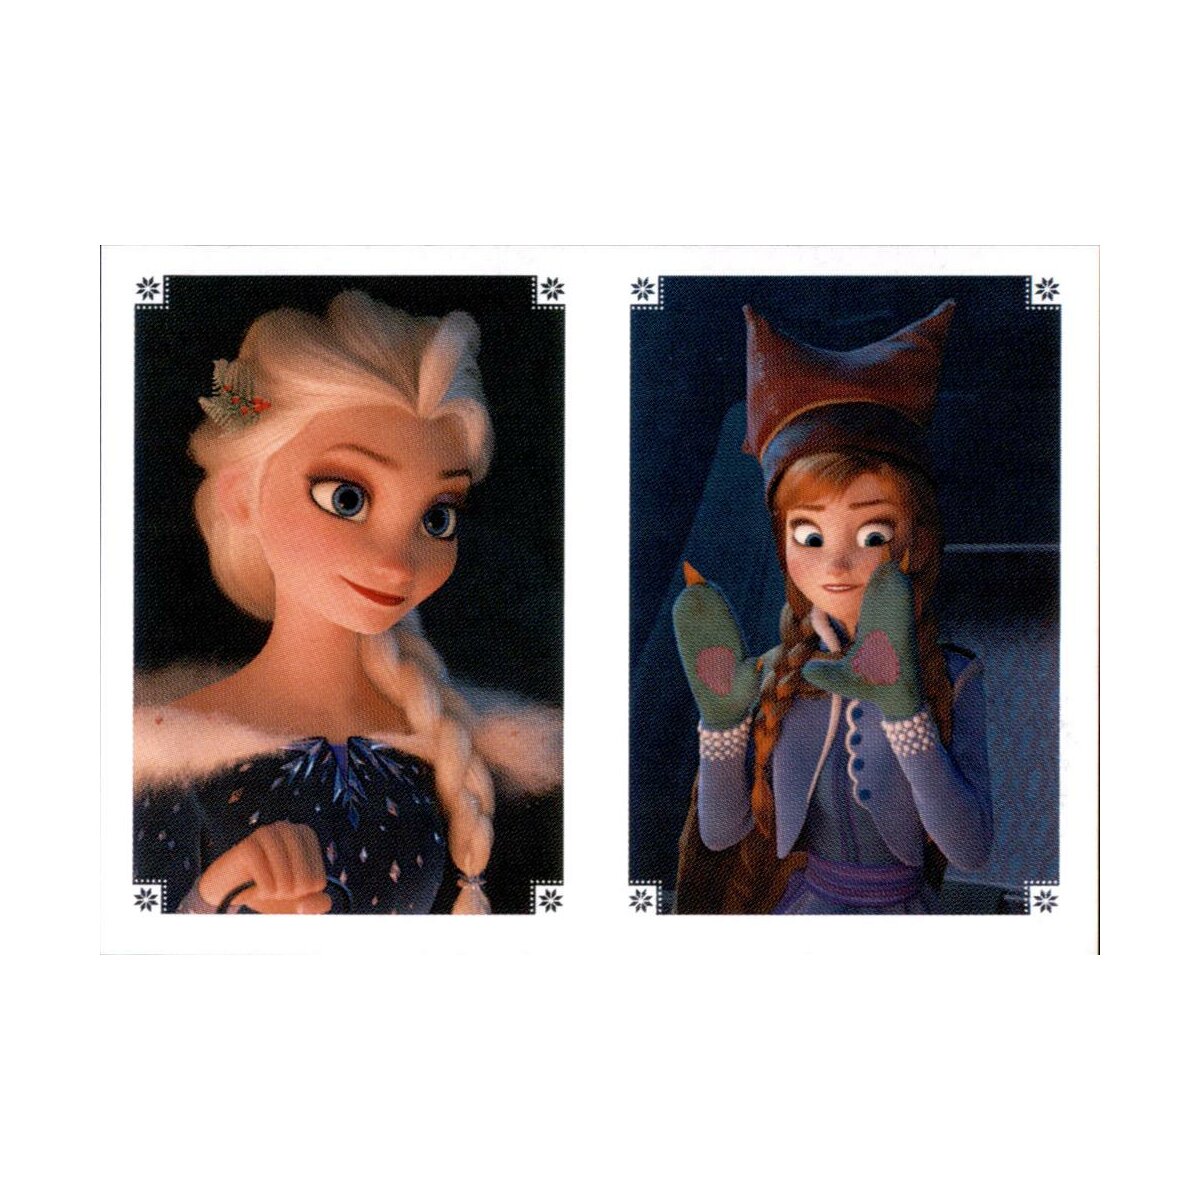 Olaf taut auf - Sticker 076A - Disney - Die Eiskönigin, 0,29 €